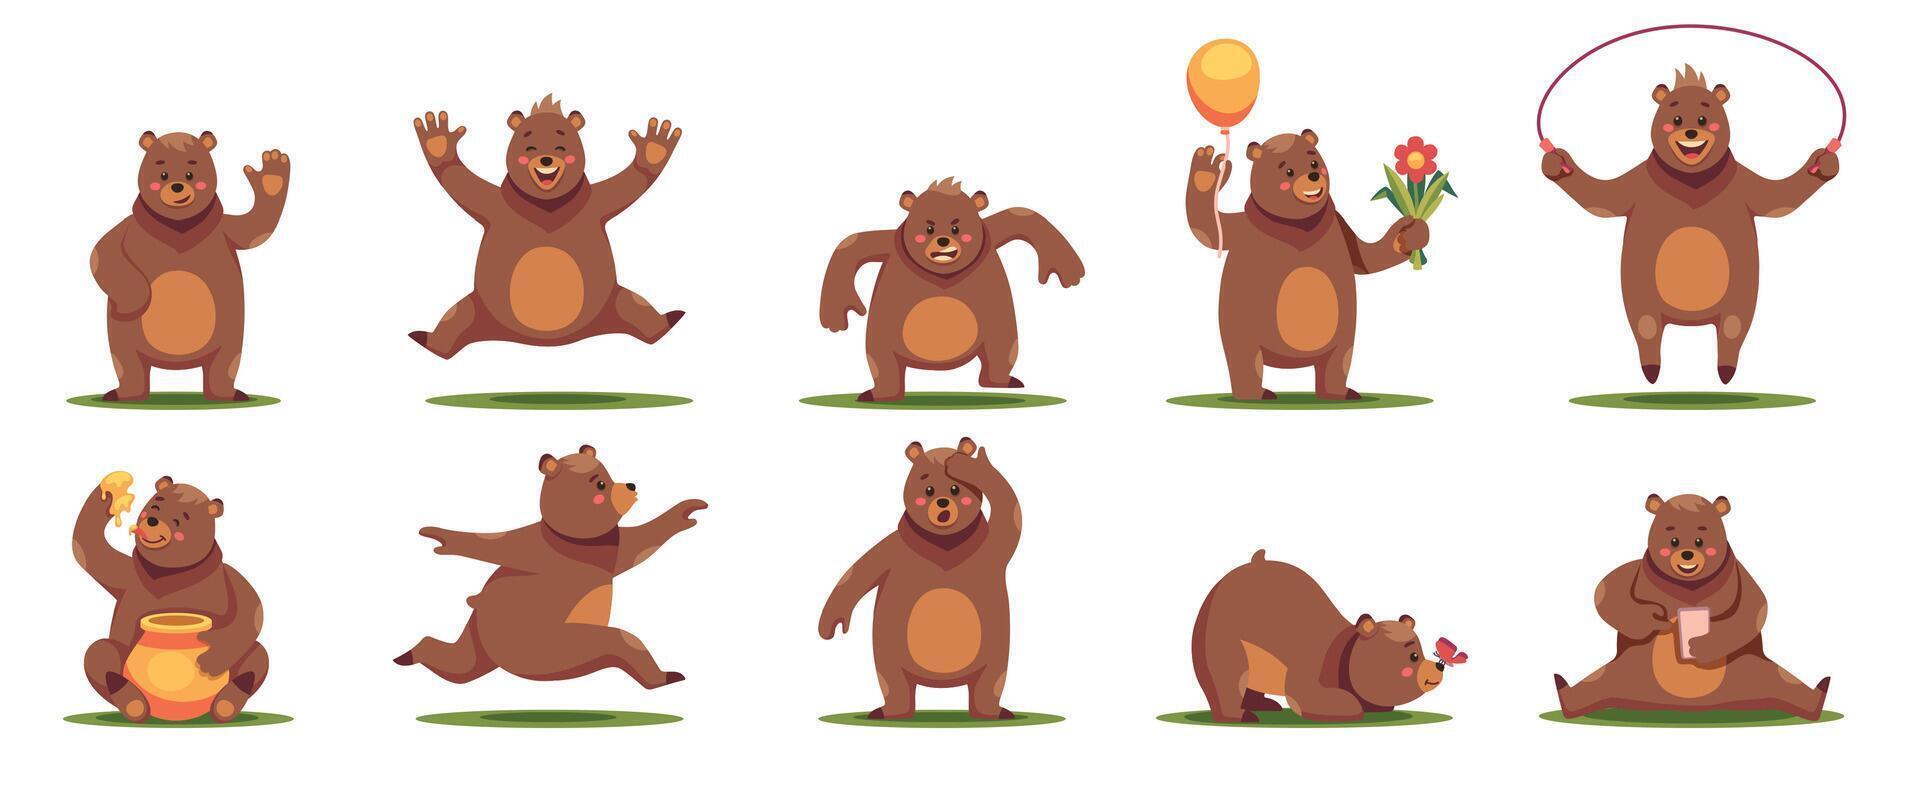 tecknad serie Björn. söt vänlig vilda djur och växter djur i annorlunda poser och situationer, fluffig grizzly maskotar, rolig förtjusande Zoo däggdjur tecken. vektor uppsättning